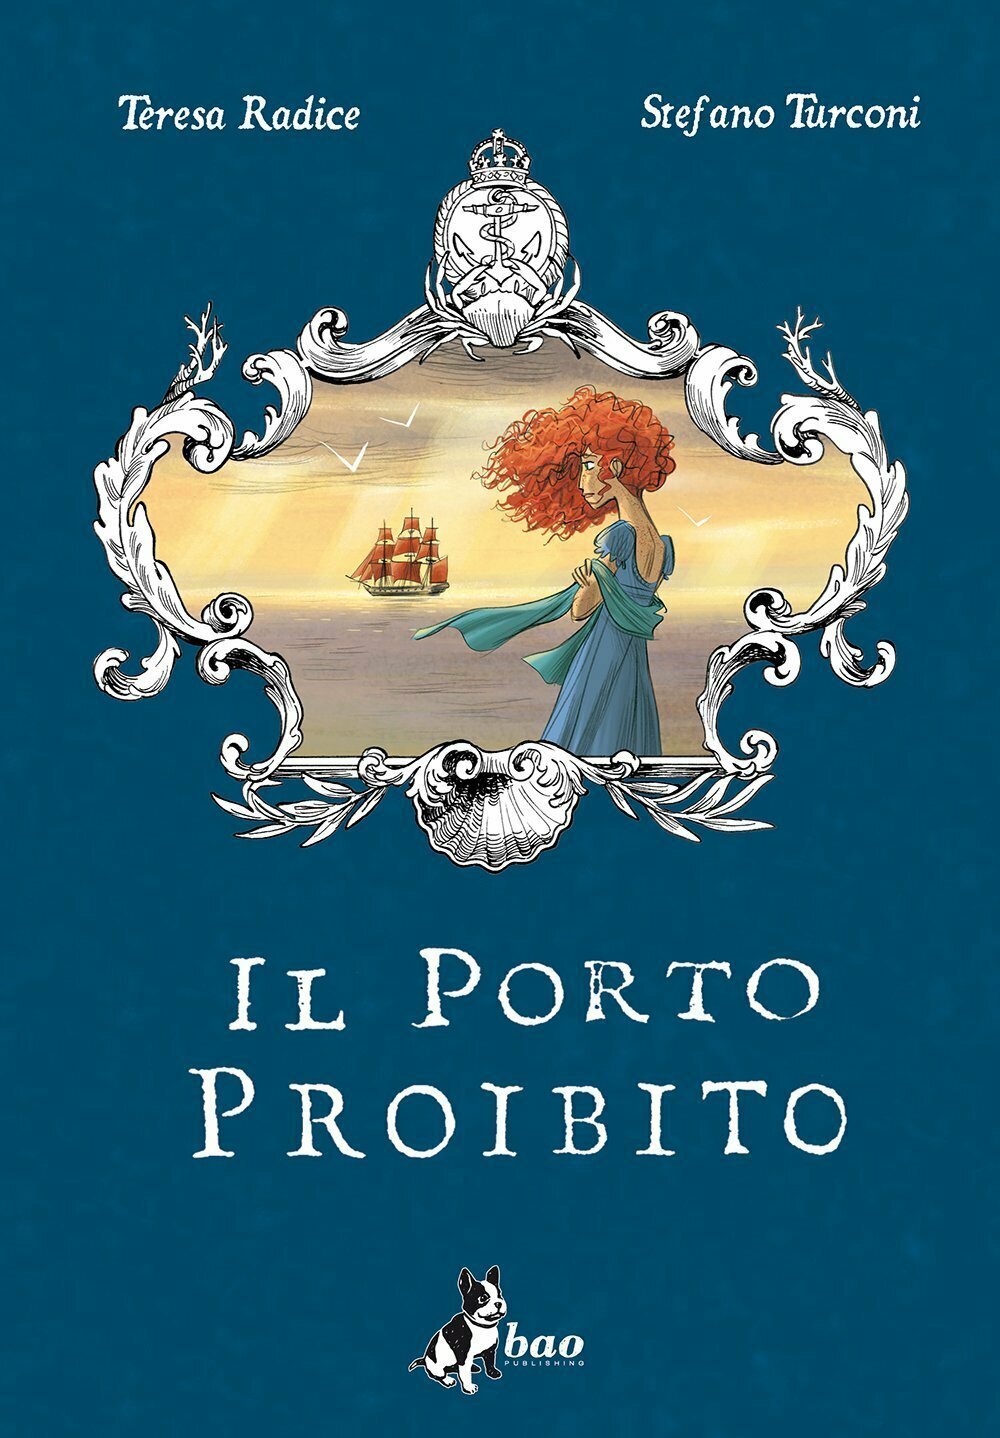 Il Porto Proibito è tra le migliori graphic novel da leggere durante l'estate